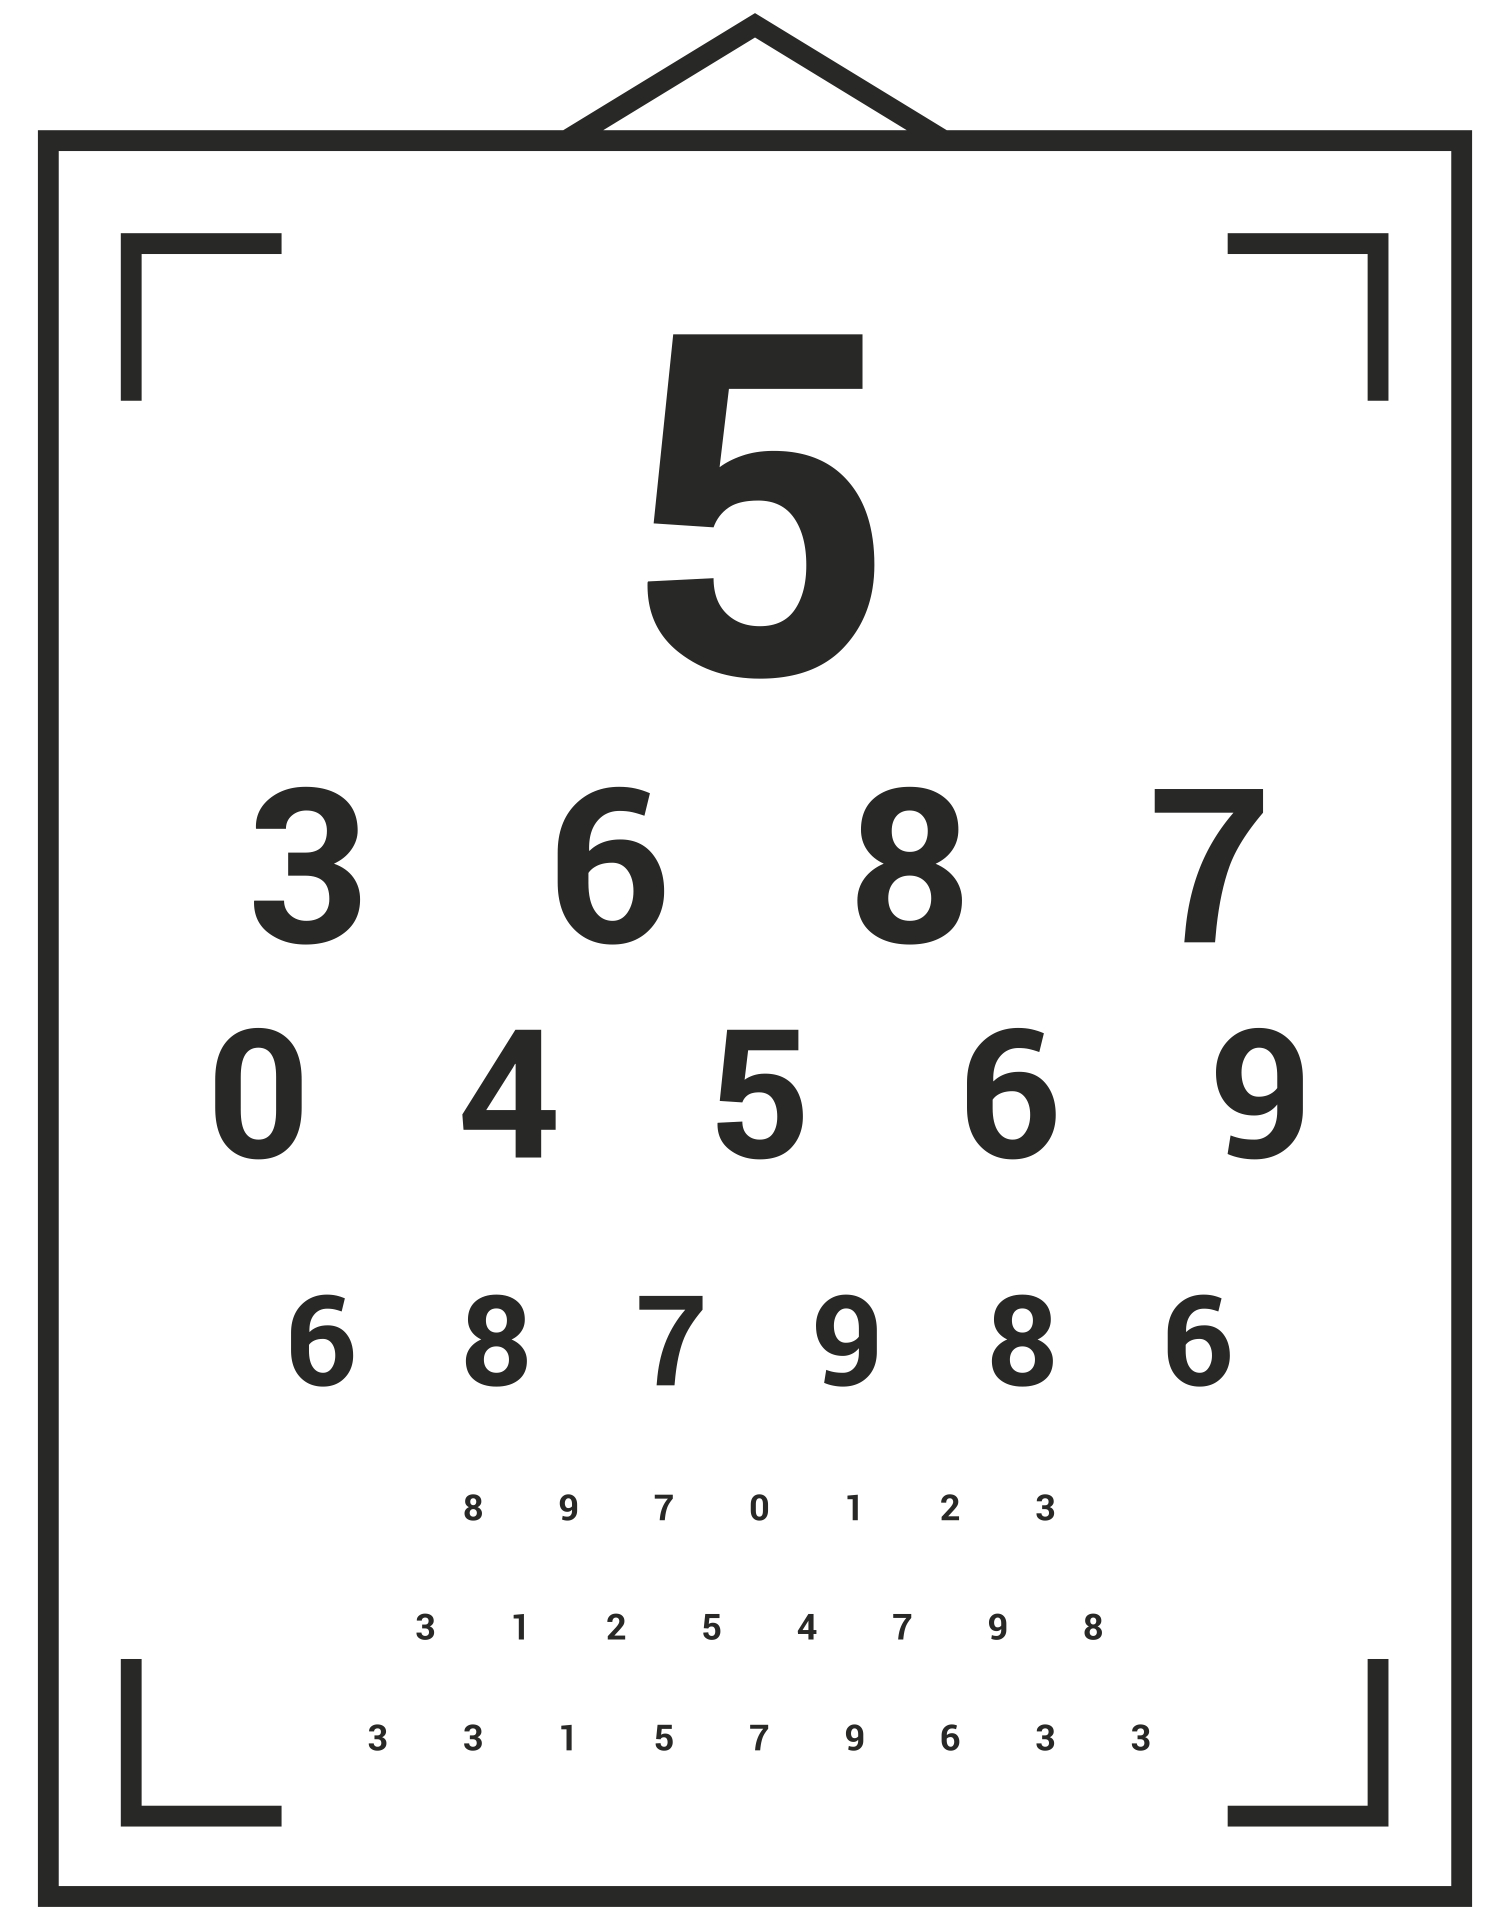 printable-eye-chart-vision-test-image-to-u